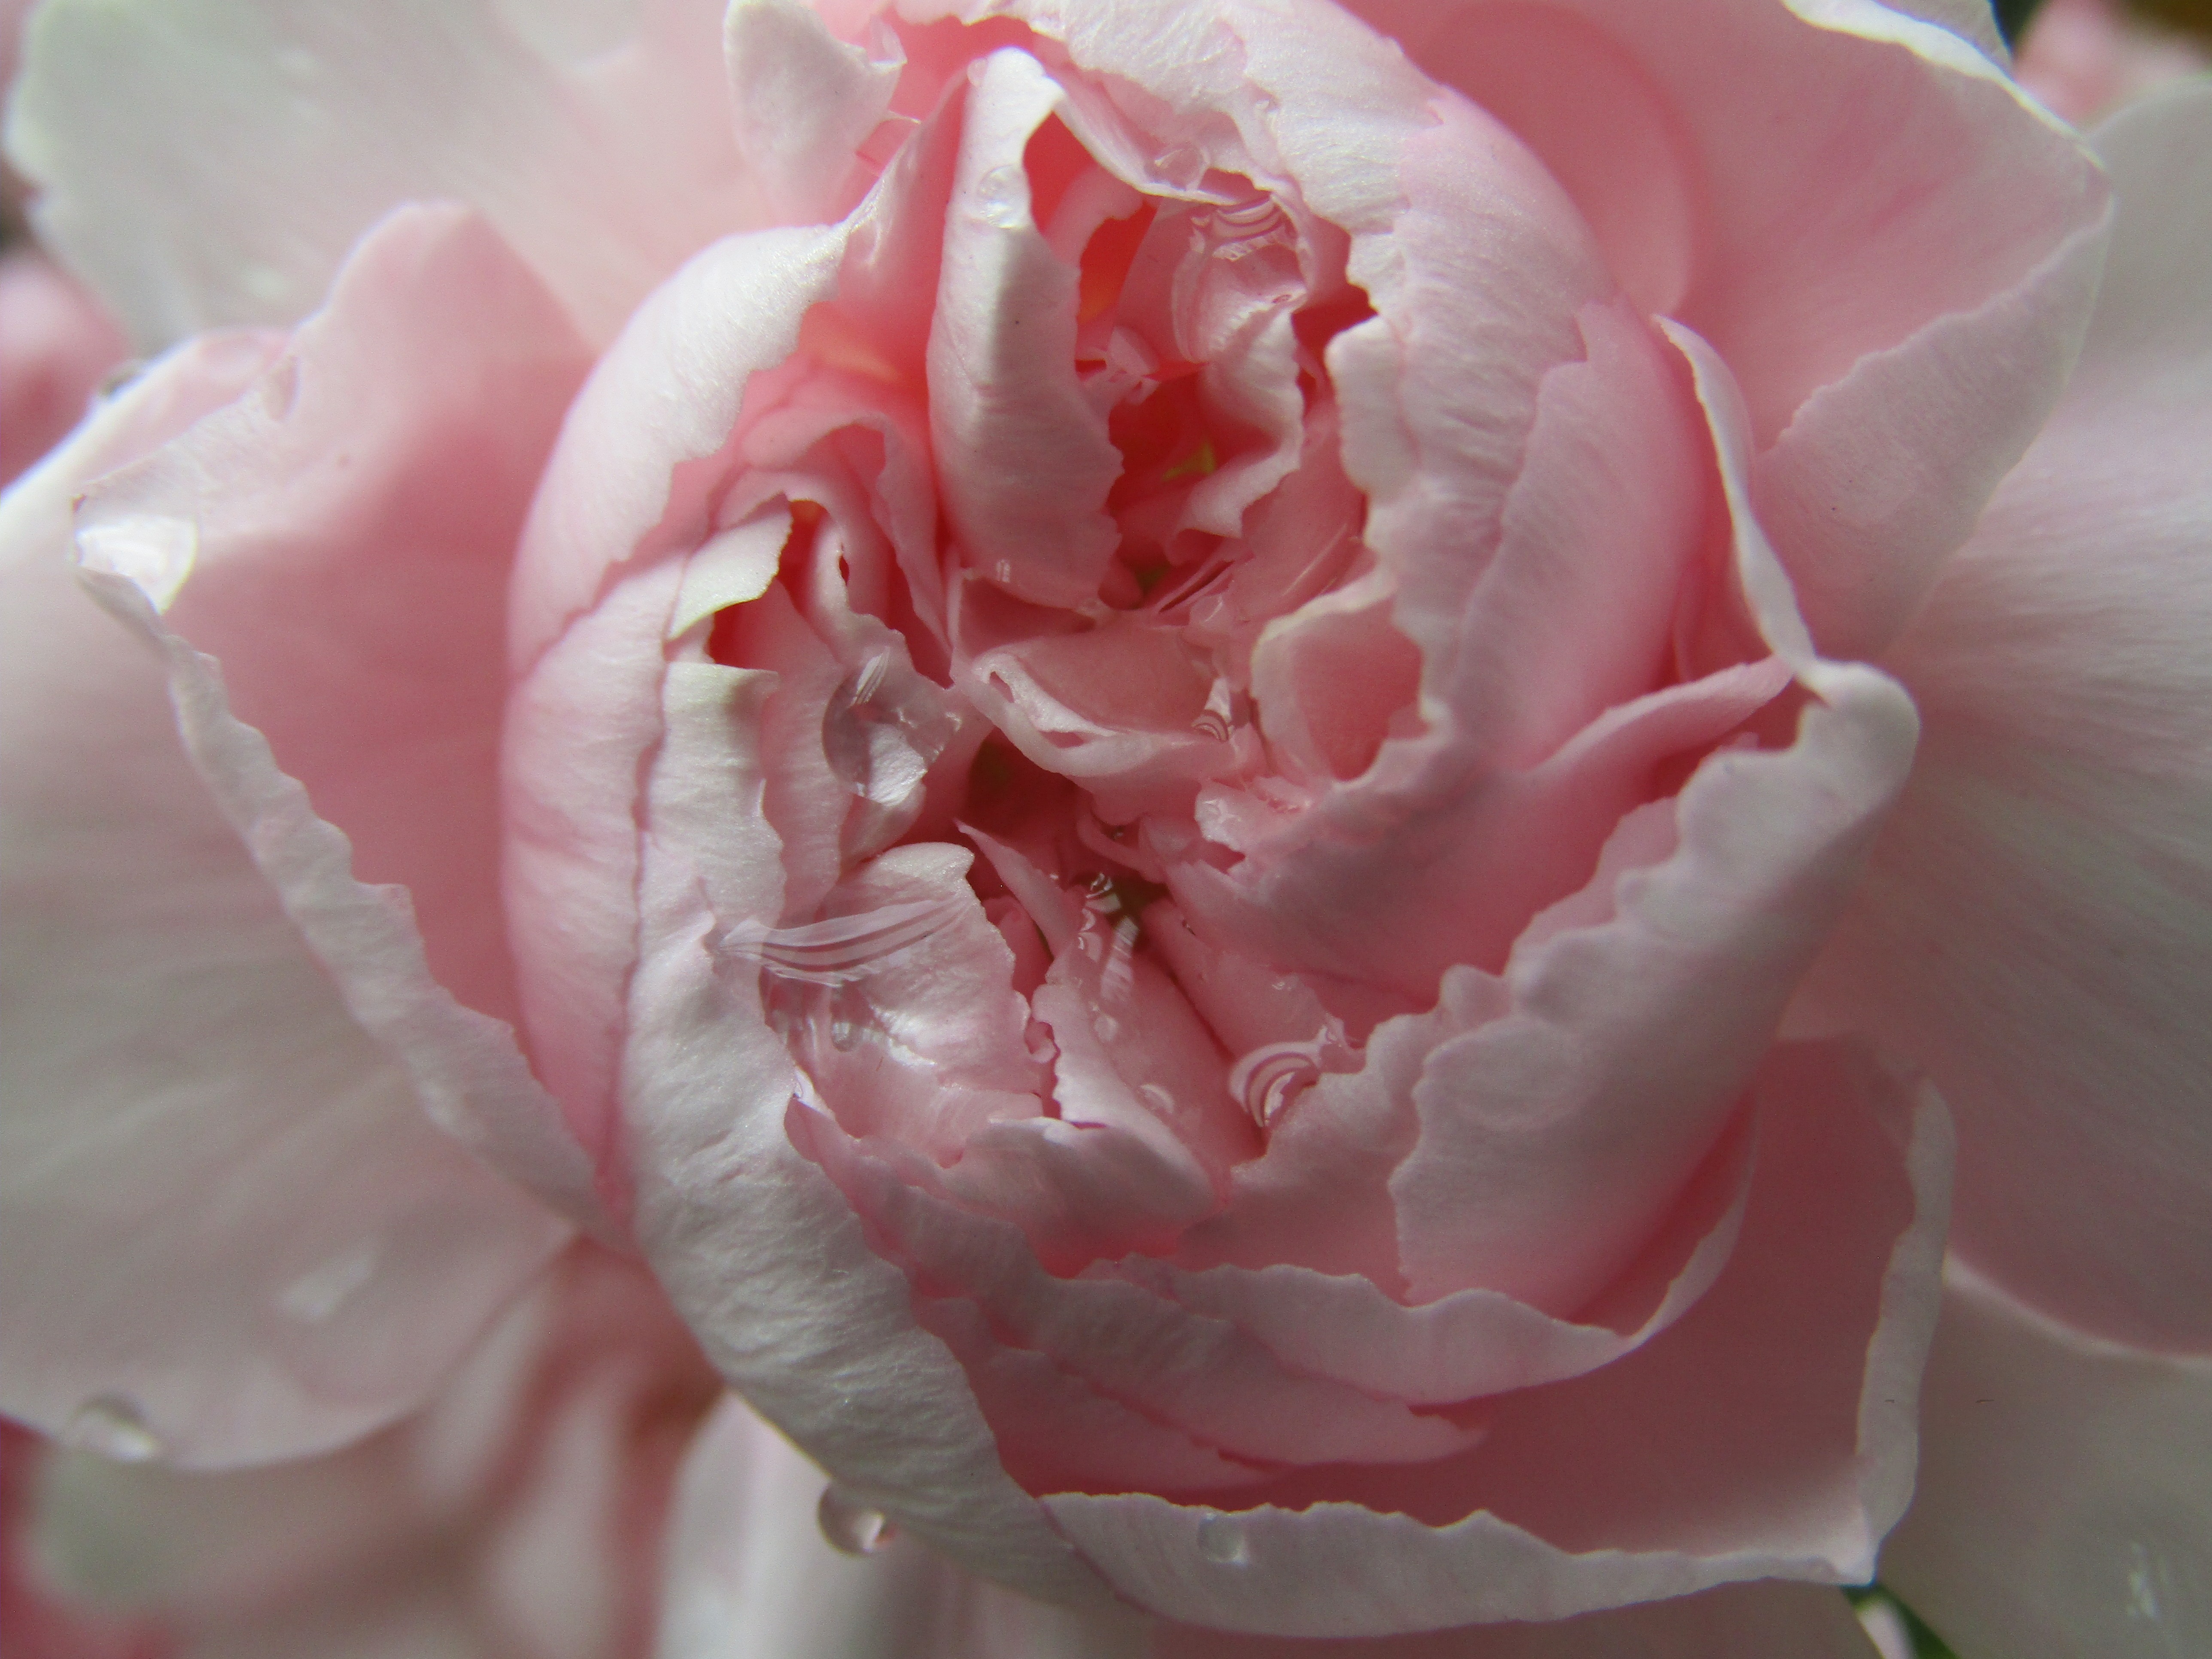 Opening Pink chrysanthemum by Demasc1